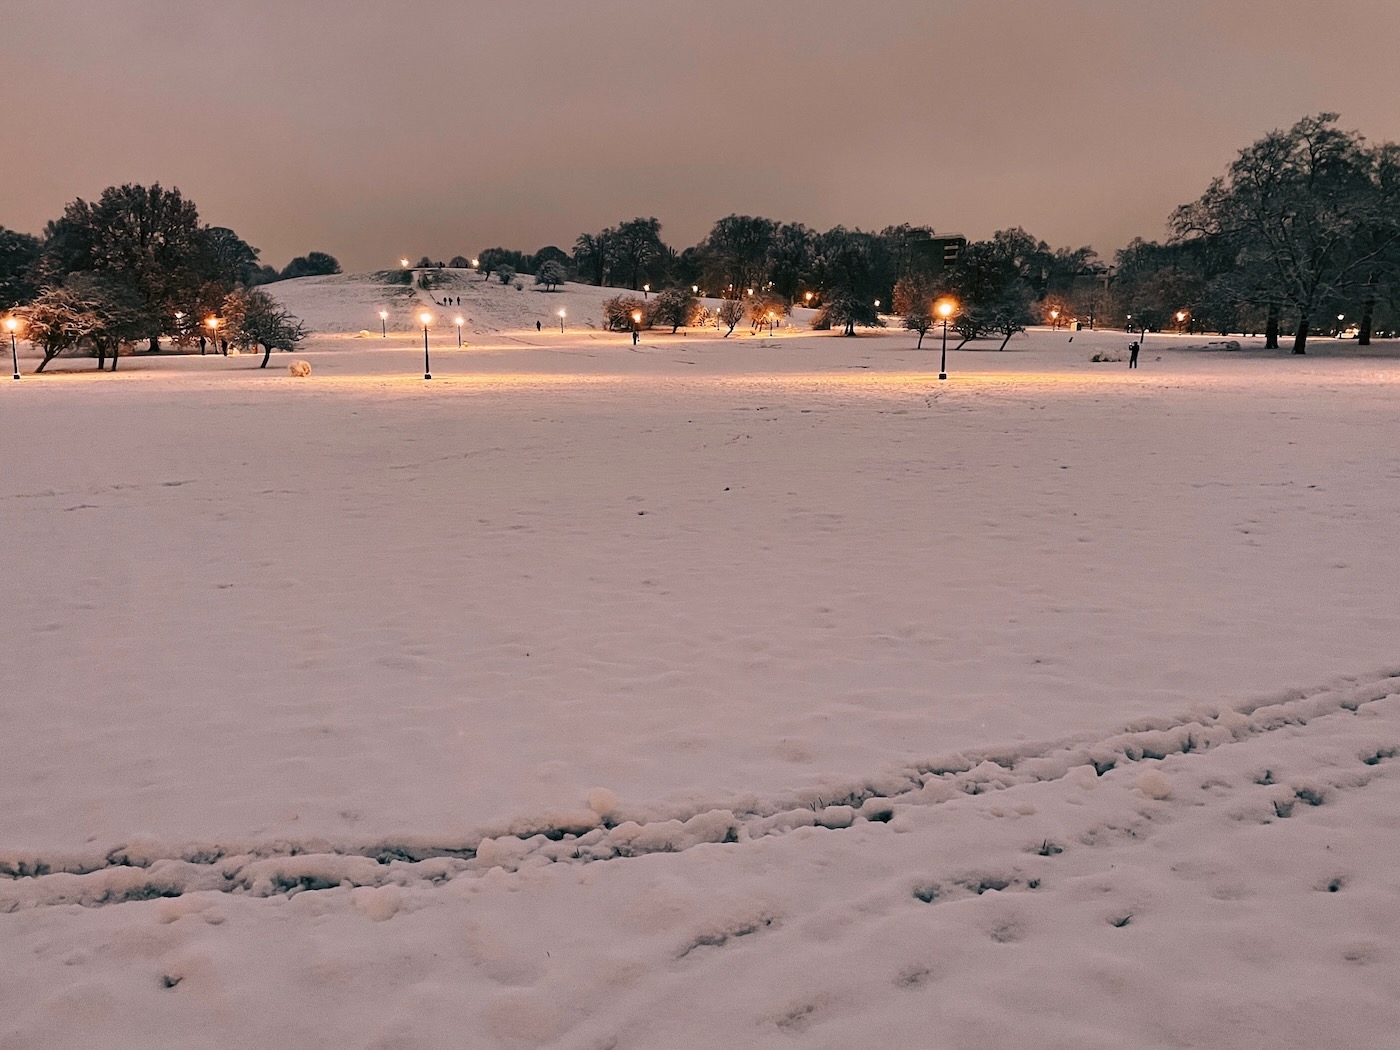 Primrose Hill covered in snow in pre-dawn light